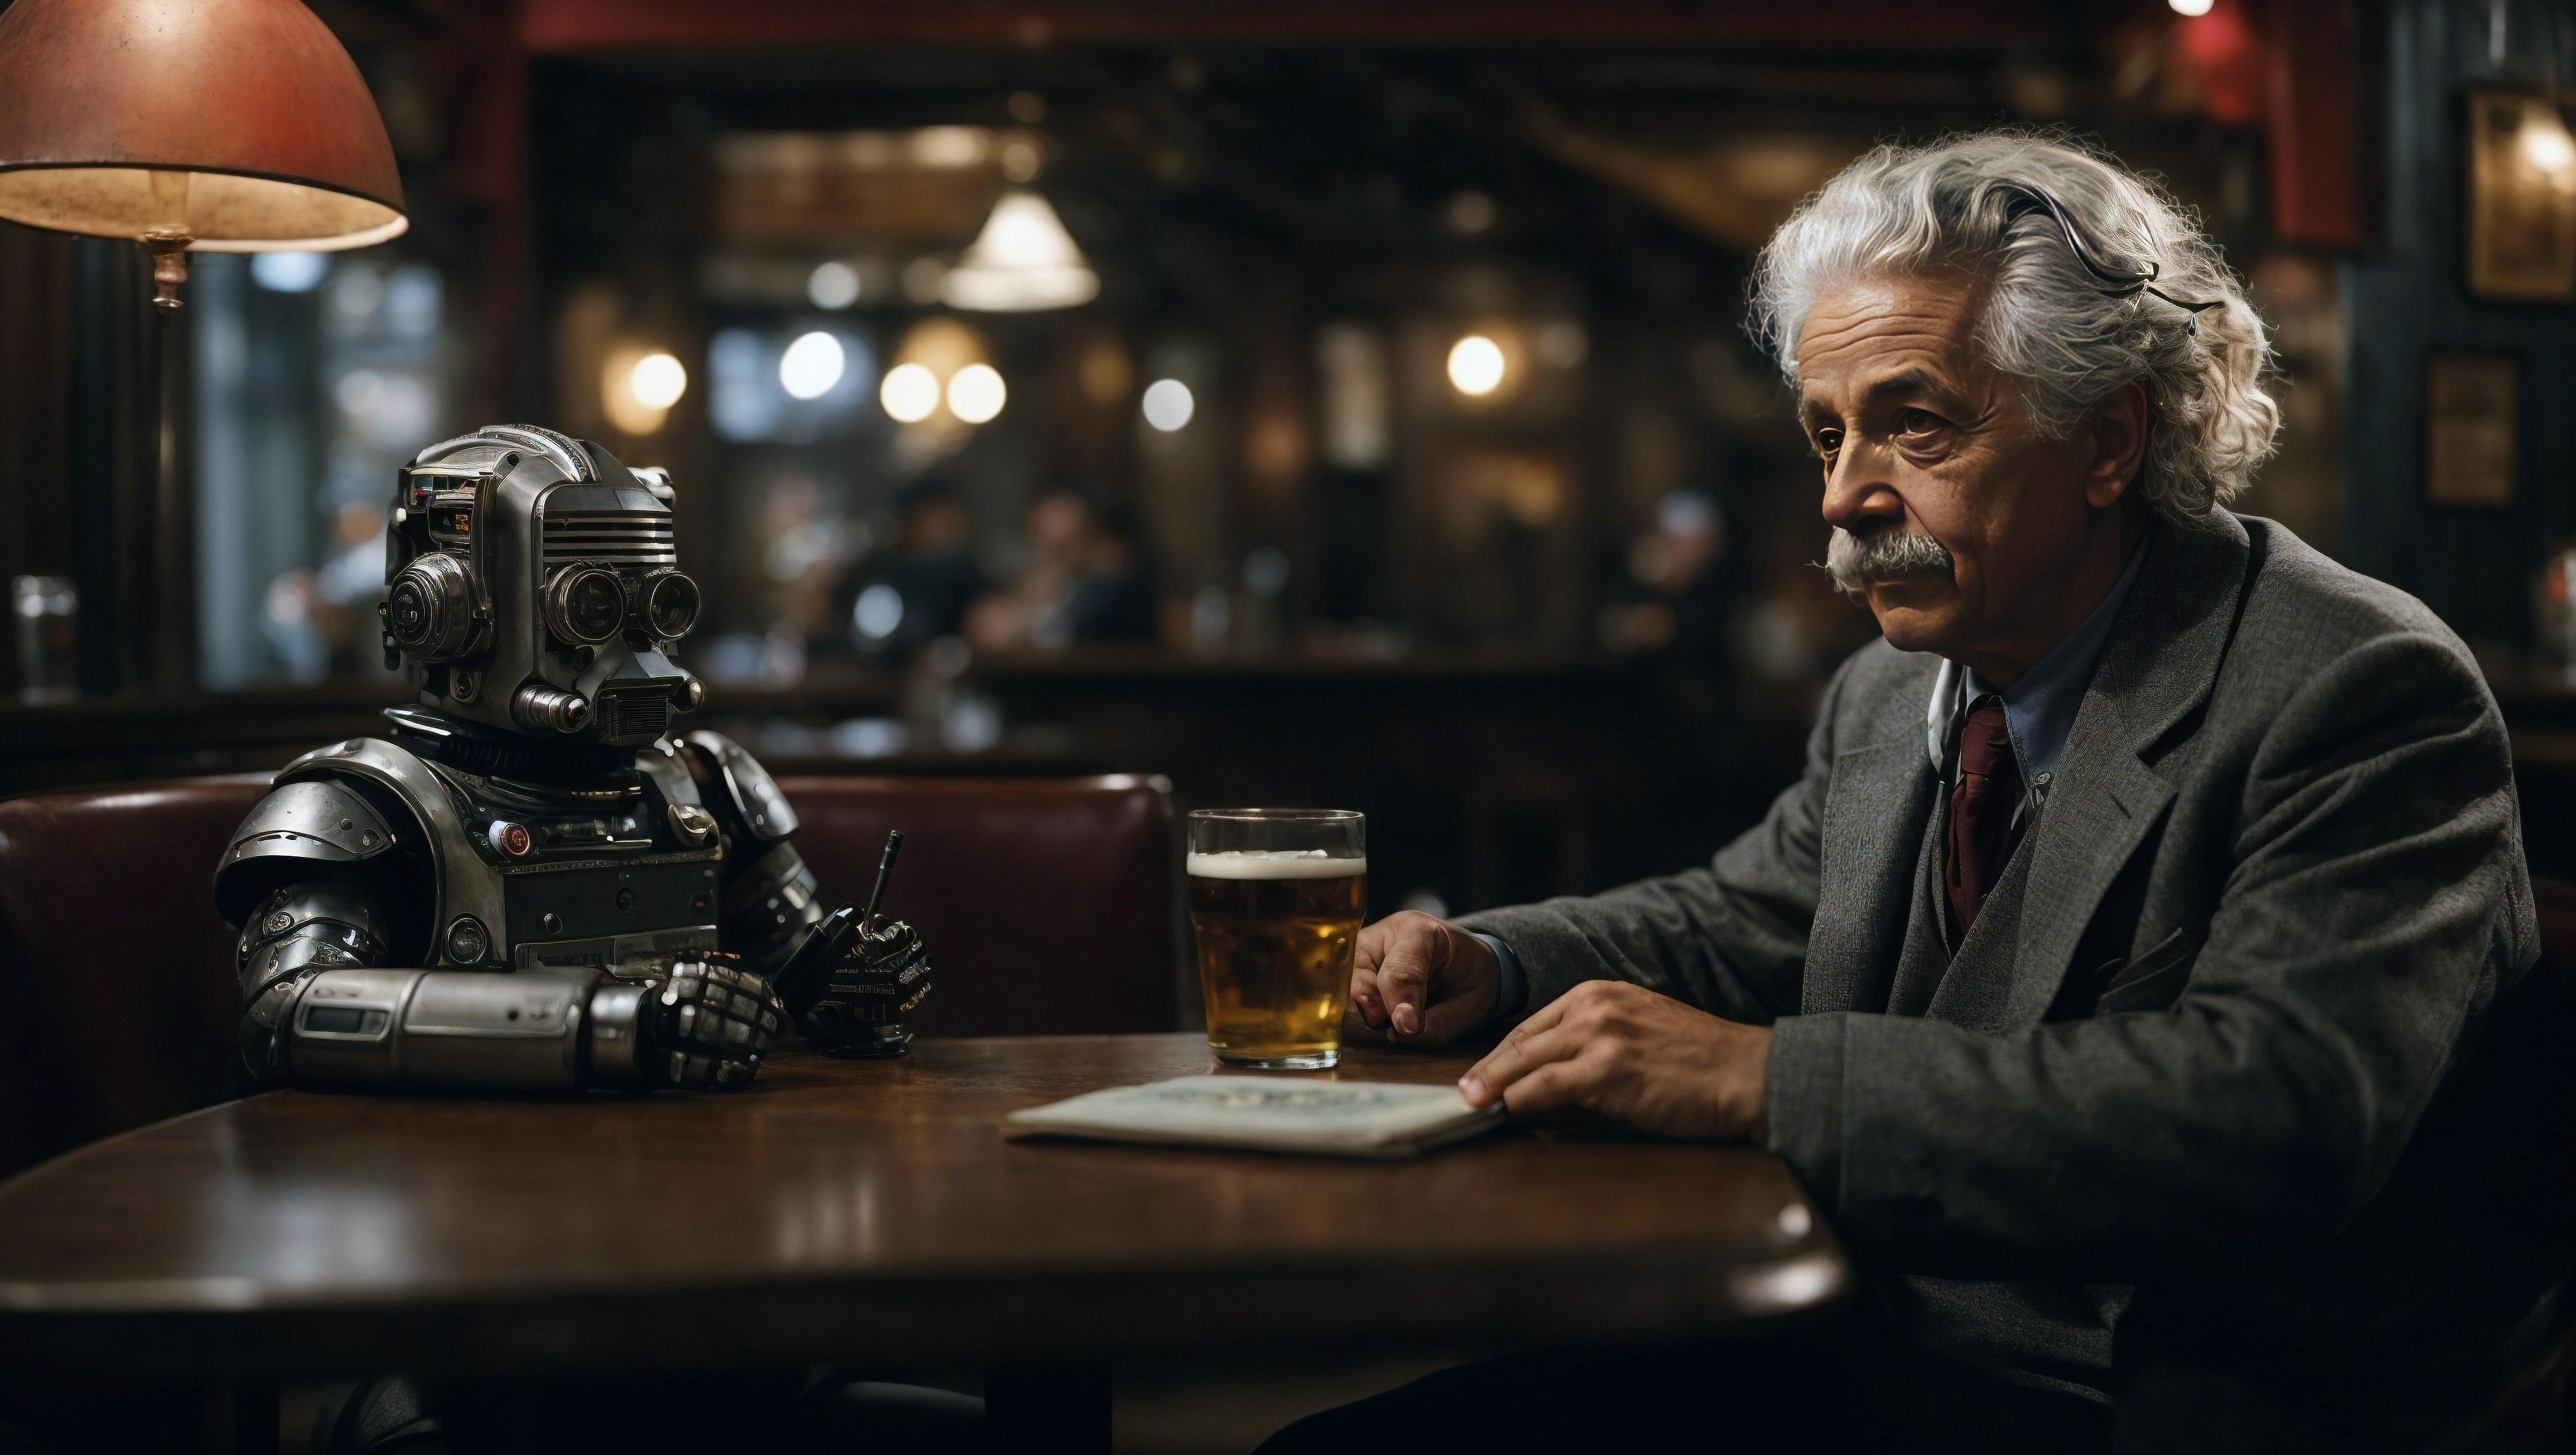 Мужчина с седыми волосами и в серой рубашке сидит за столом рядом с роботом из "Звездных войн".